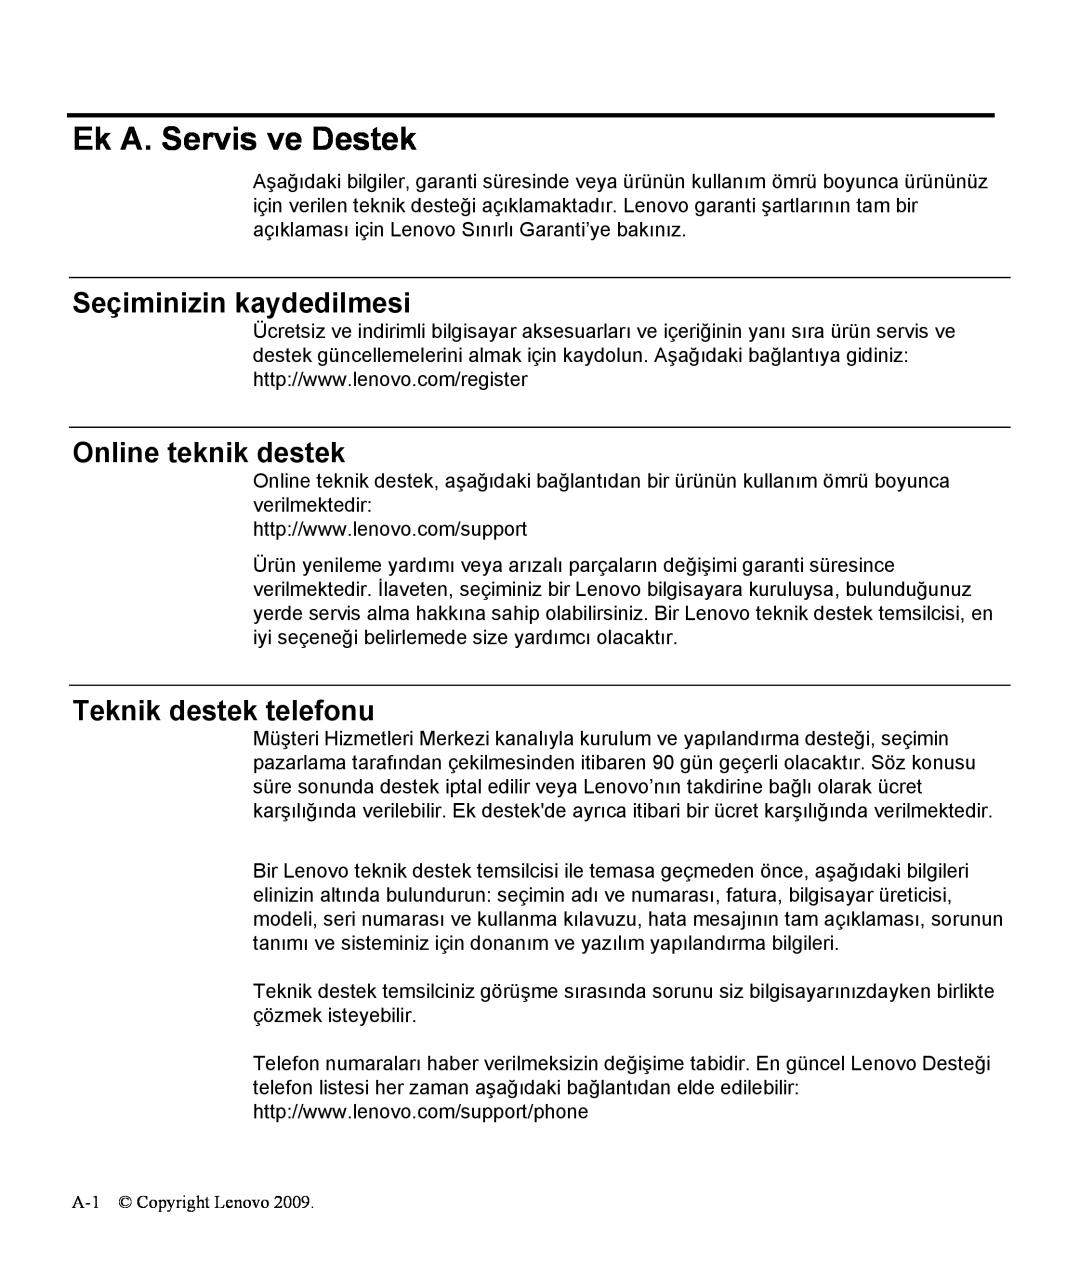 Lenovo L1711P manual Ek A. Servis ve Destek, Seçiminizin kaydedilmesi, Online teknik destek, Teknik destek telefonu 